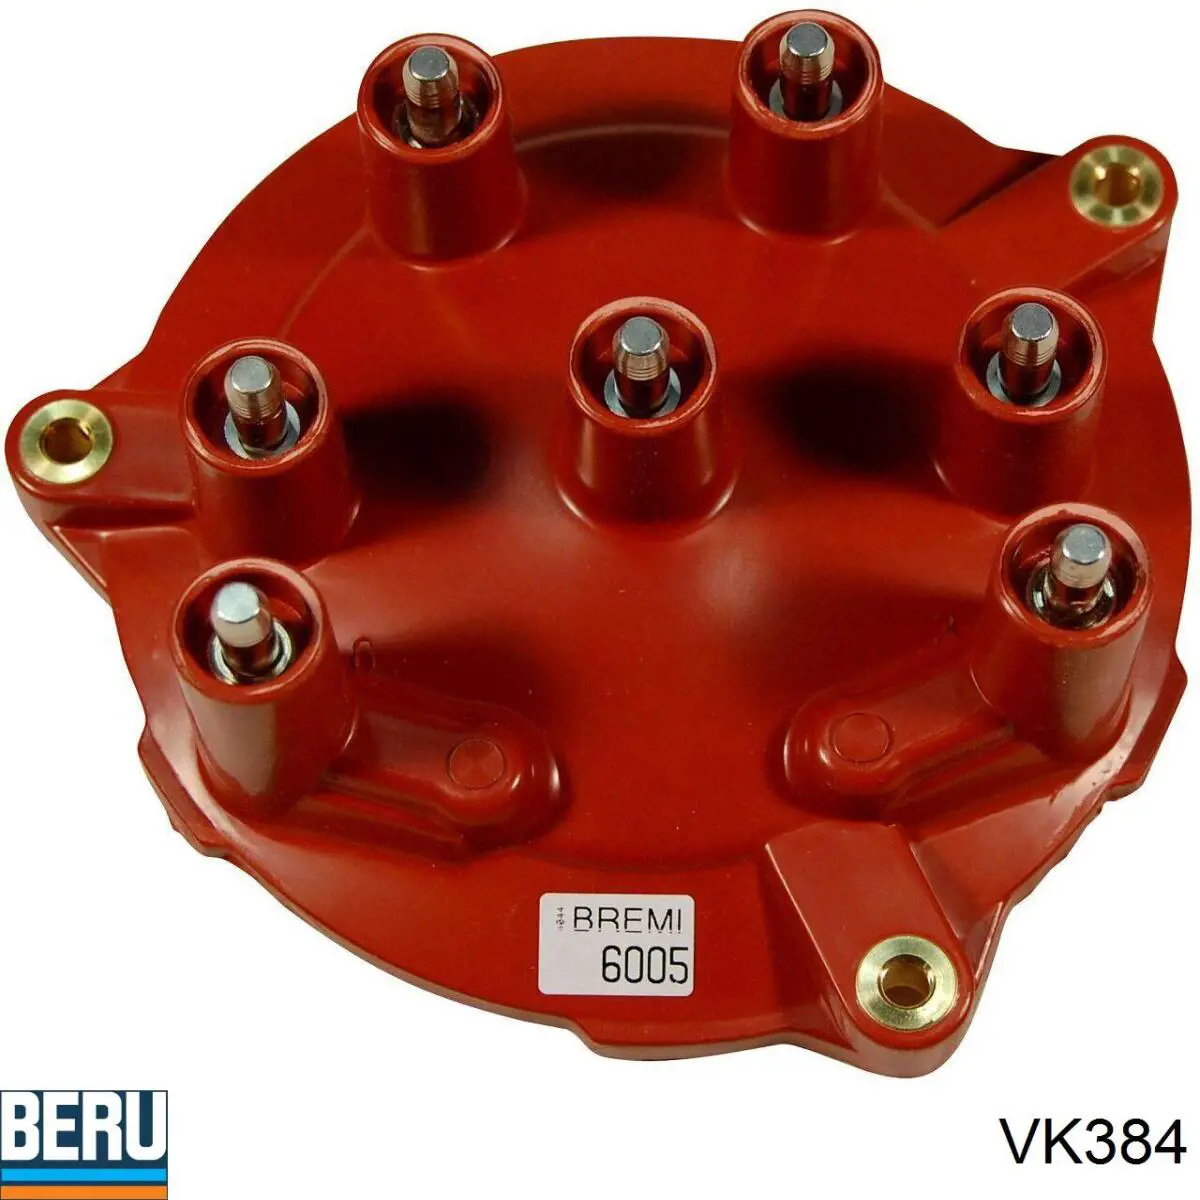 VK384 Beru tapa de distribuidor de encendido